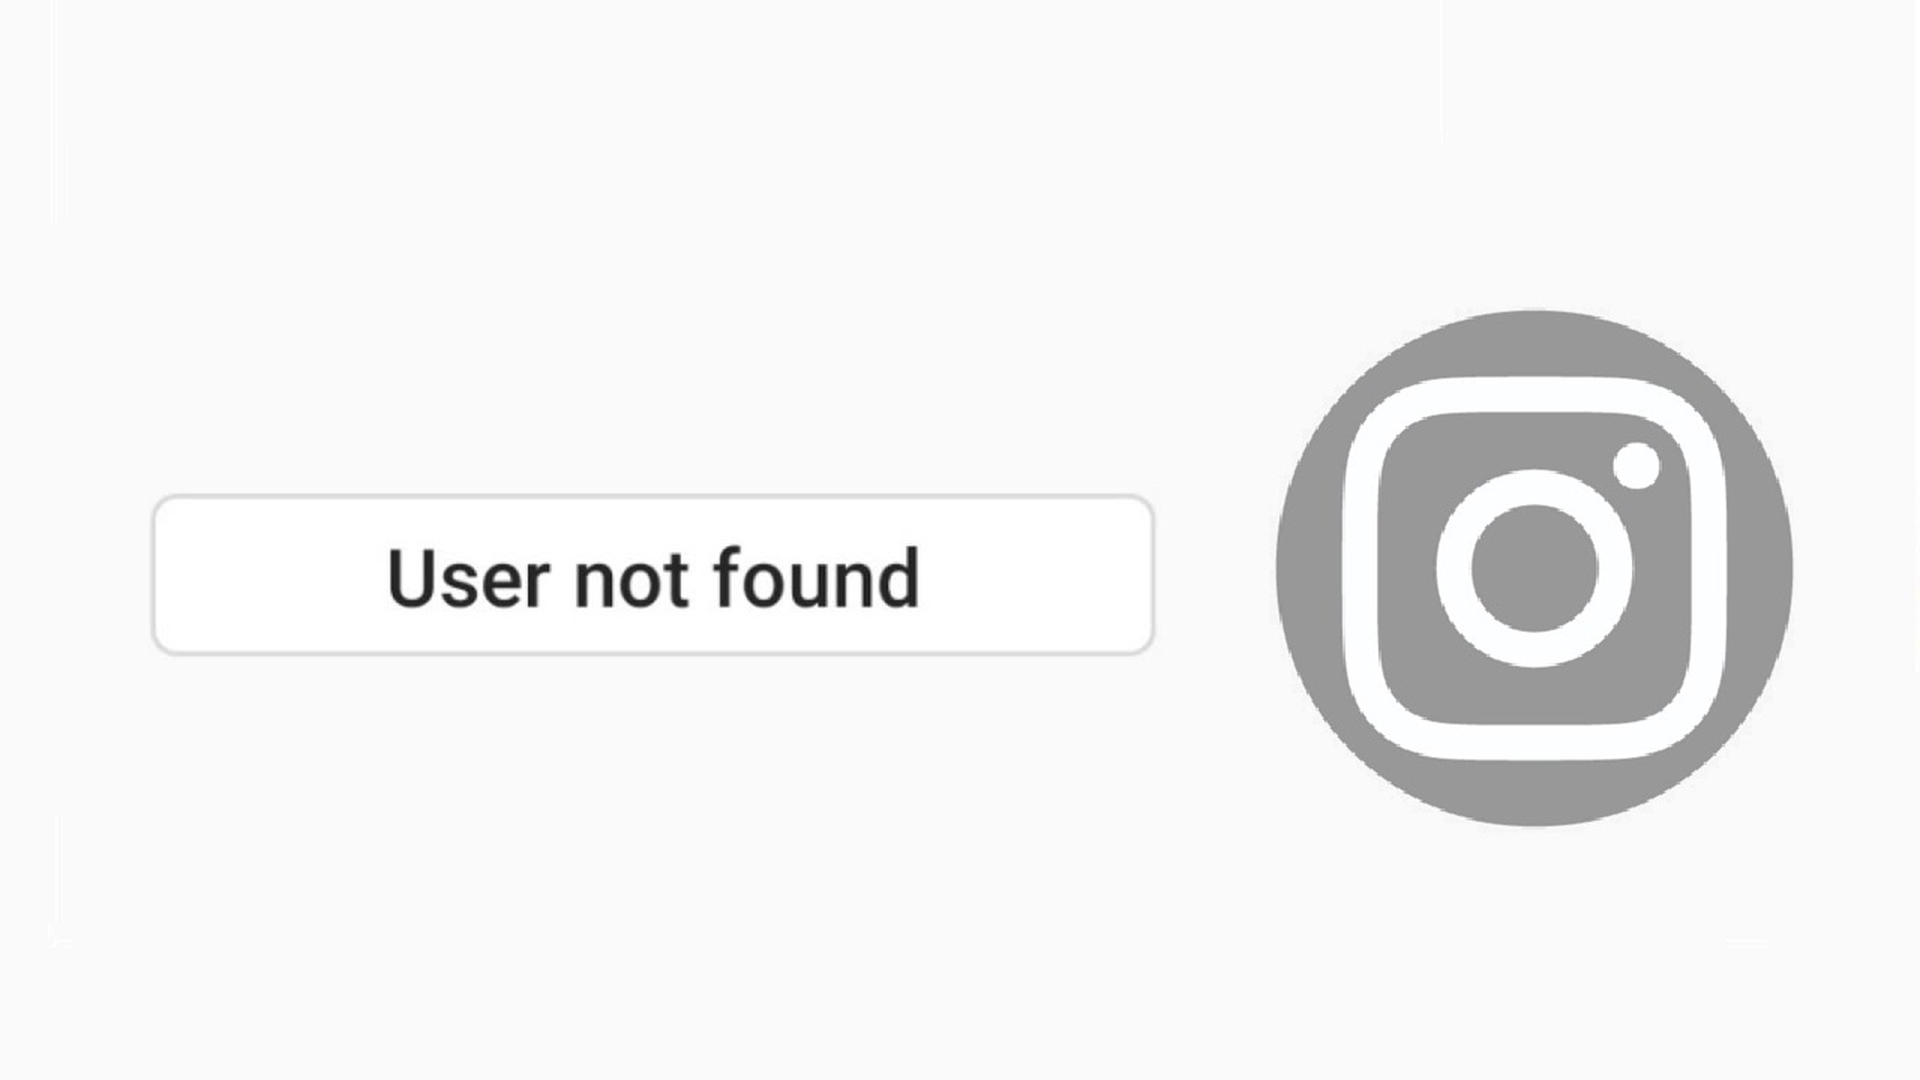 O que significa “Usuário não encontrado” no Instagram?